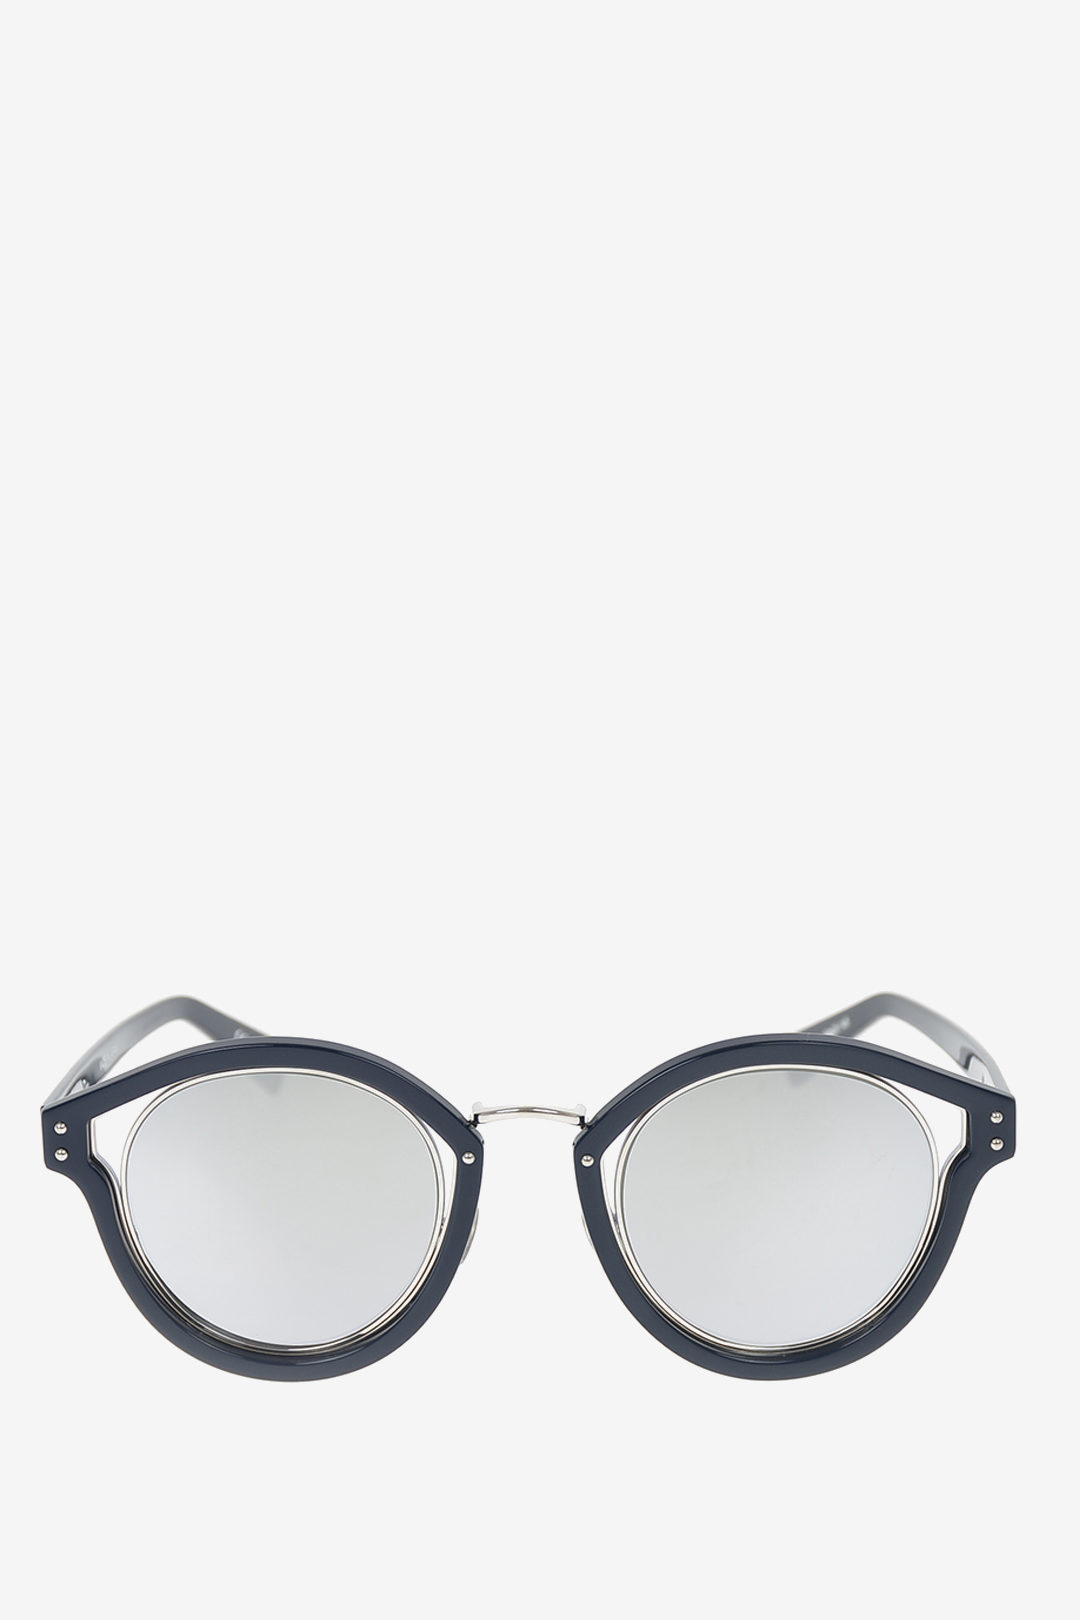 dior mirrored sunglasses